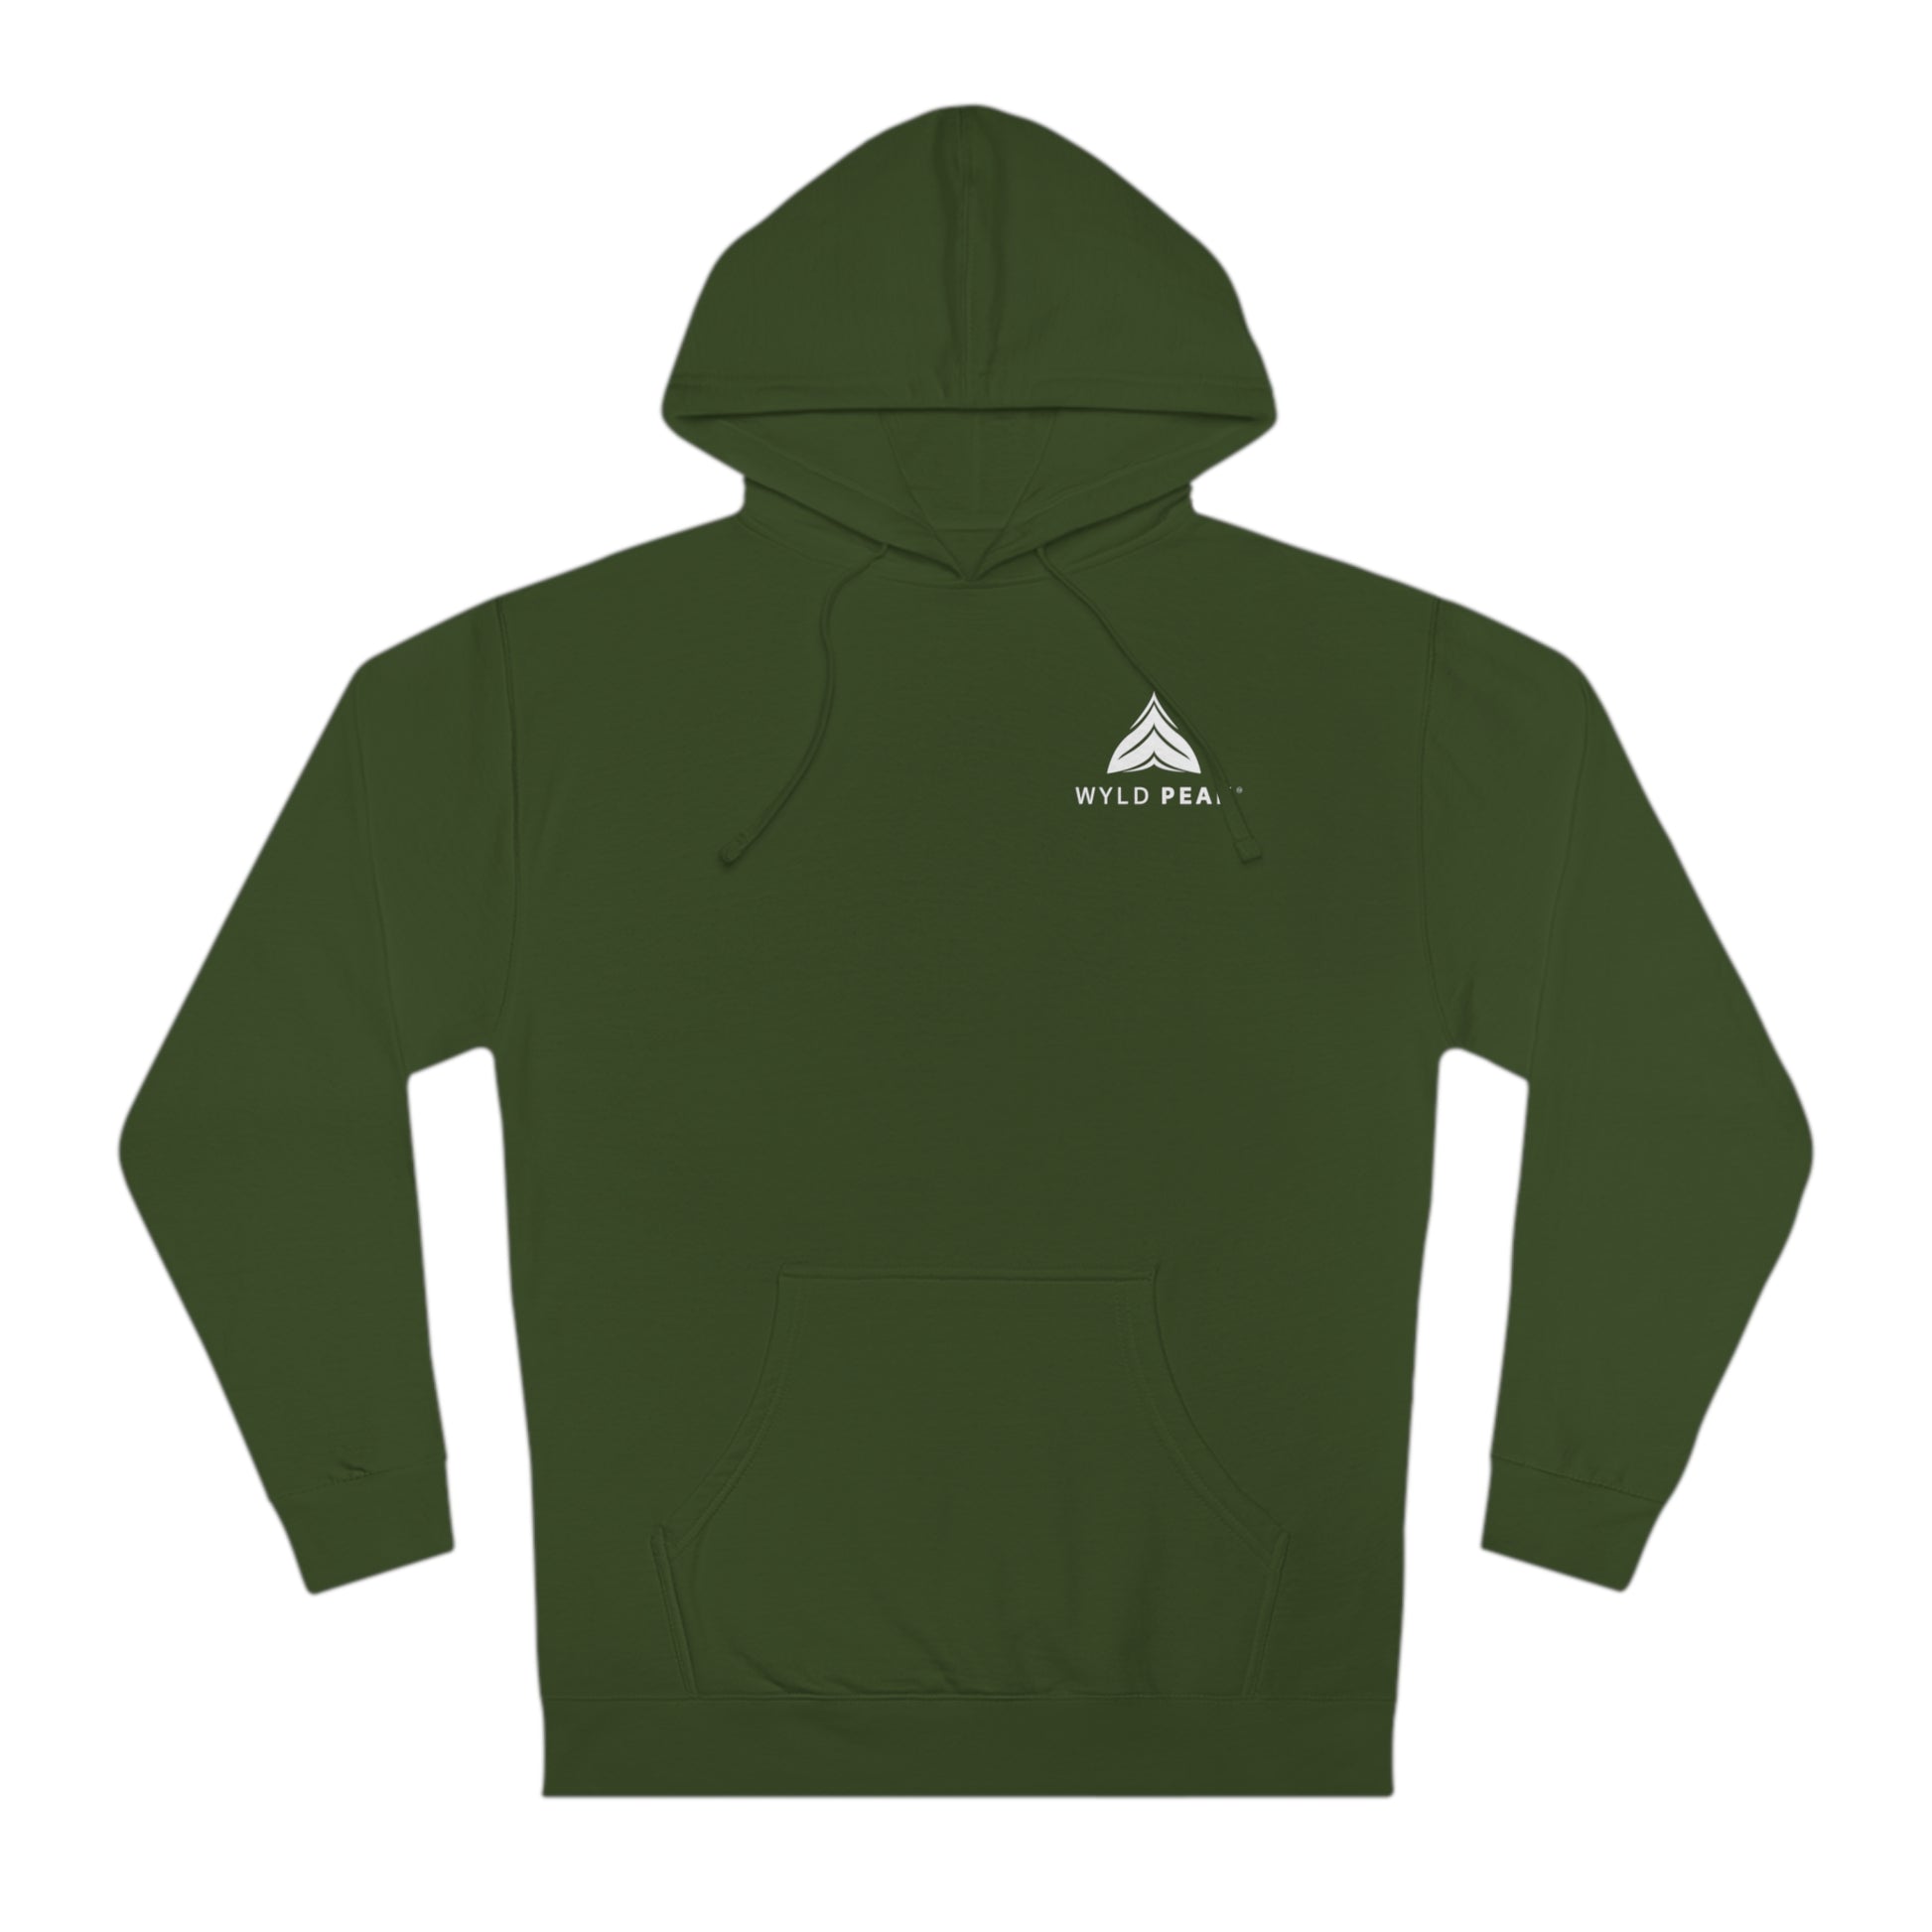 Unisex classic hooded sweatshirt hoodie in green